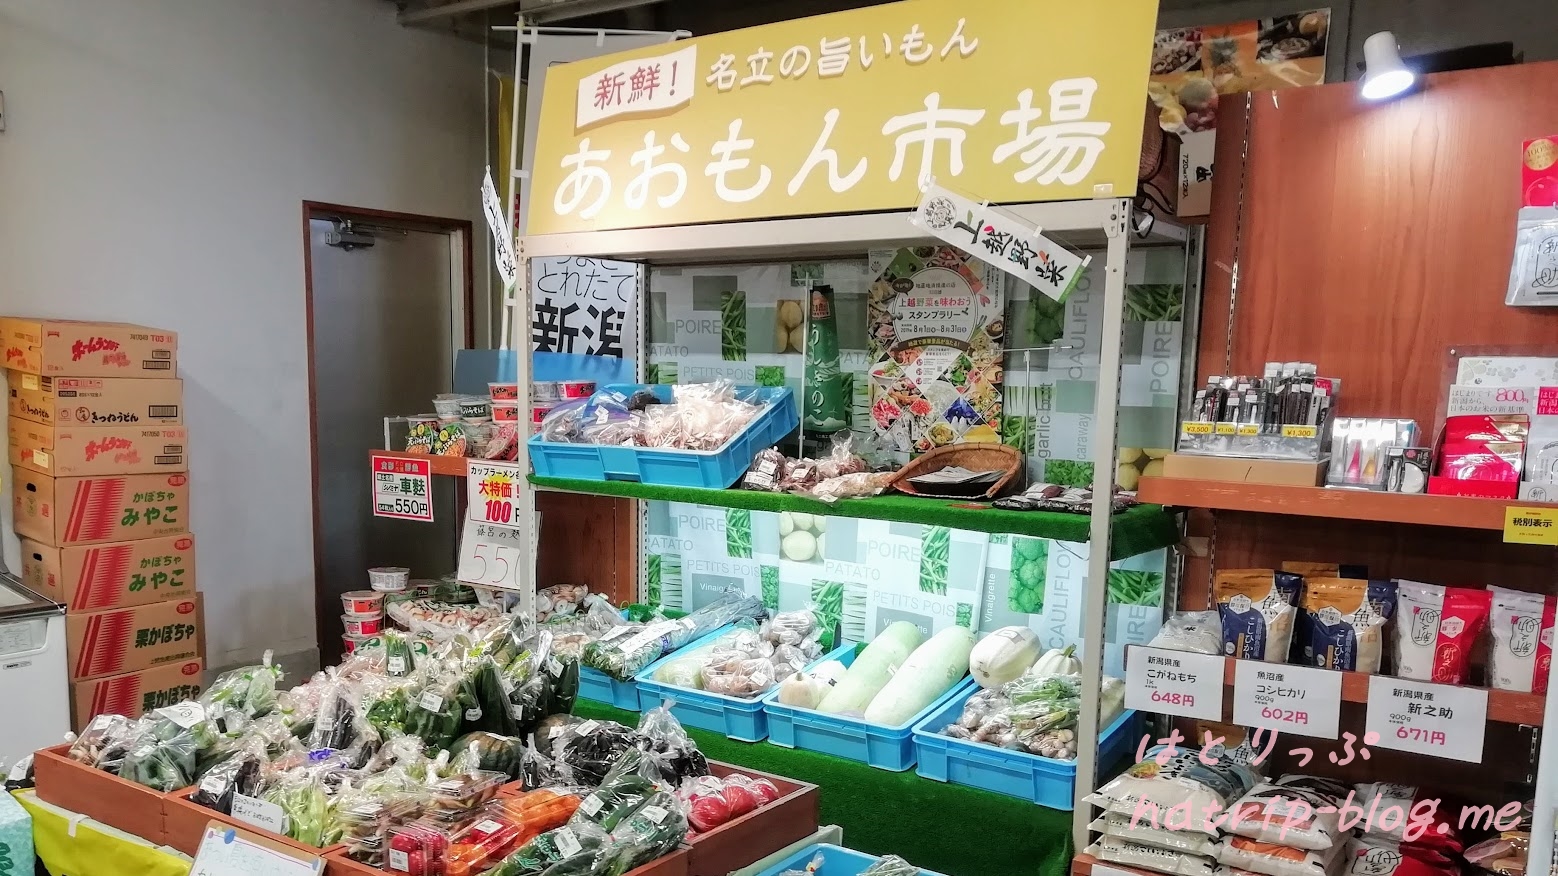 新潟県上越市 道の駅 うみてらす名立 食彩鮮魚市場 あおもん市場